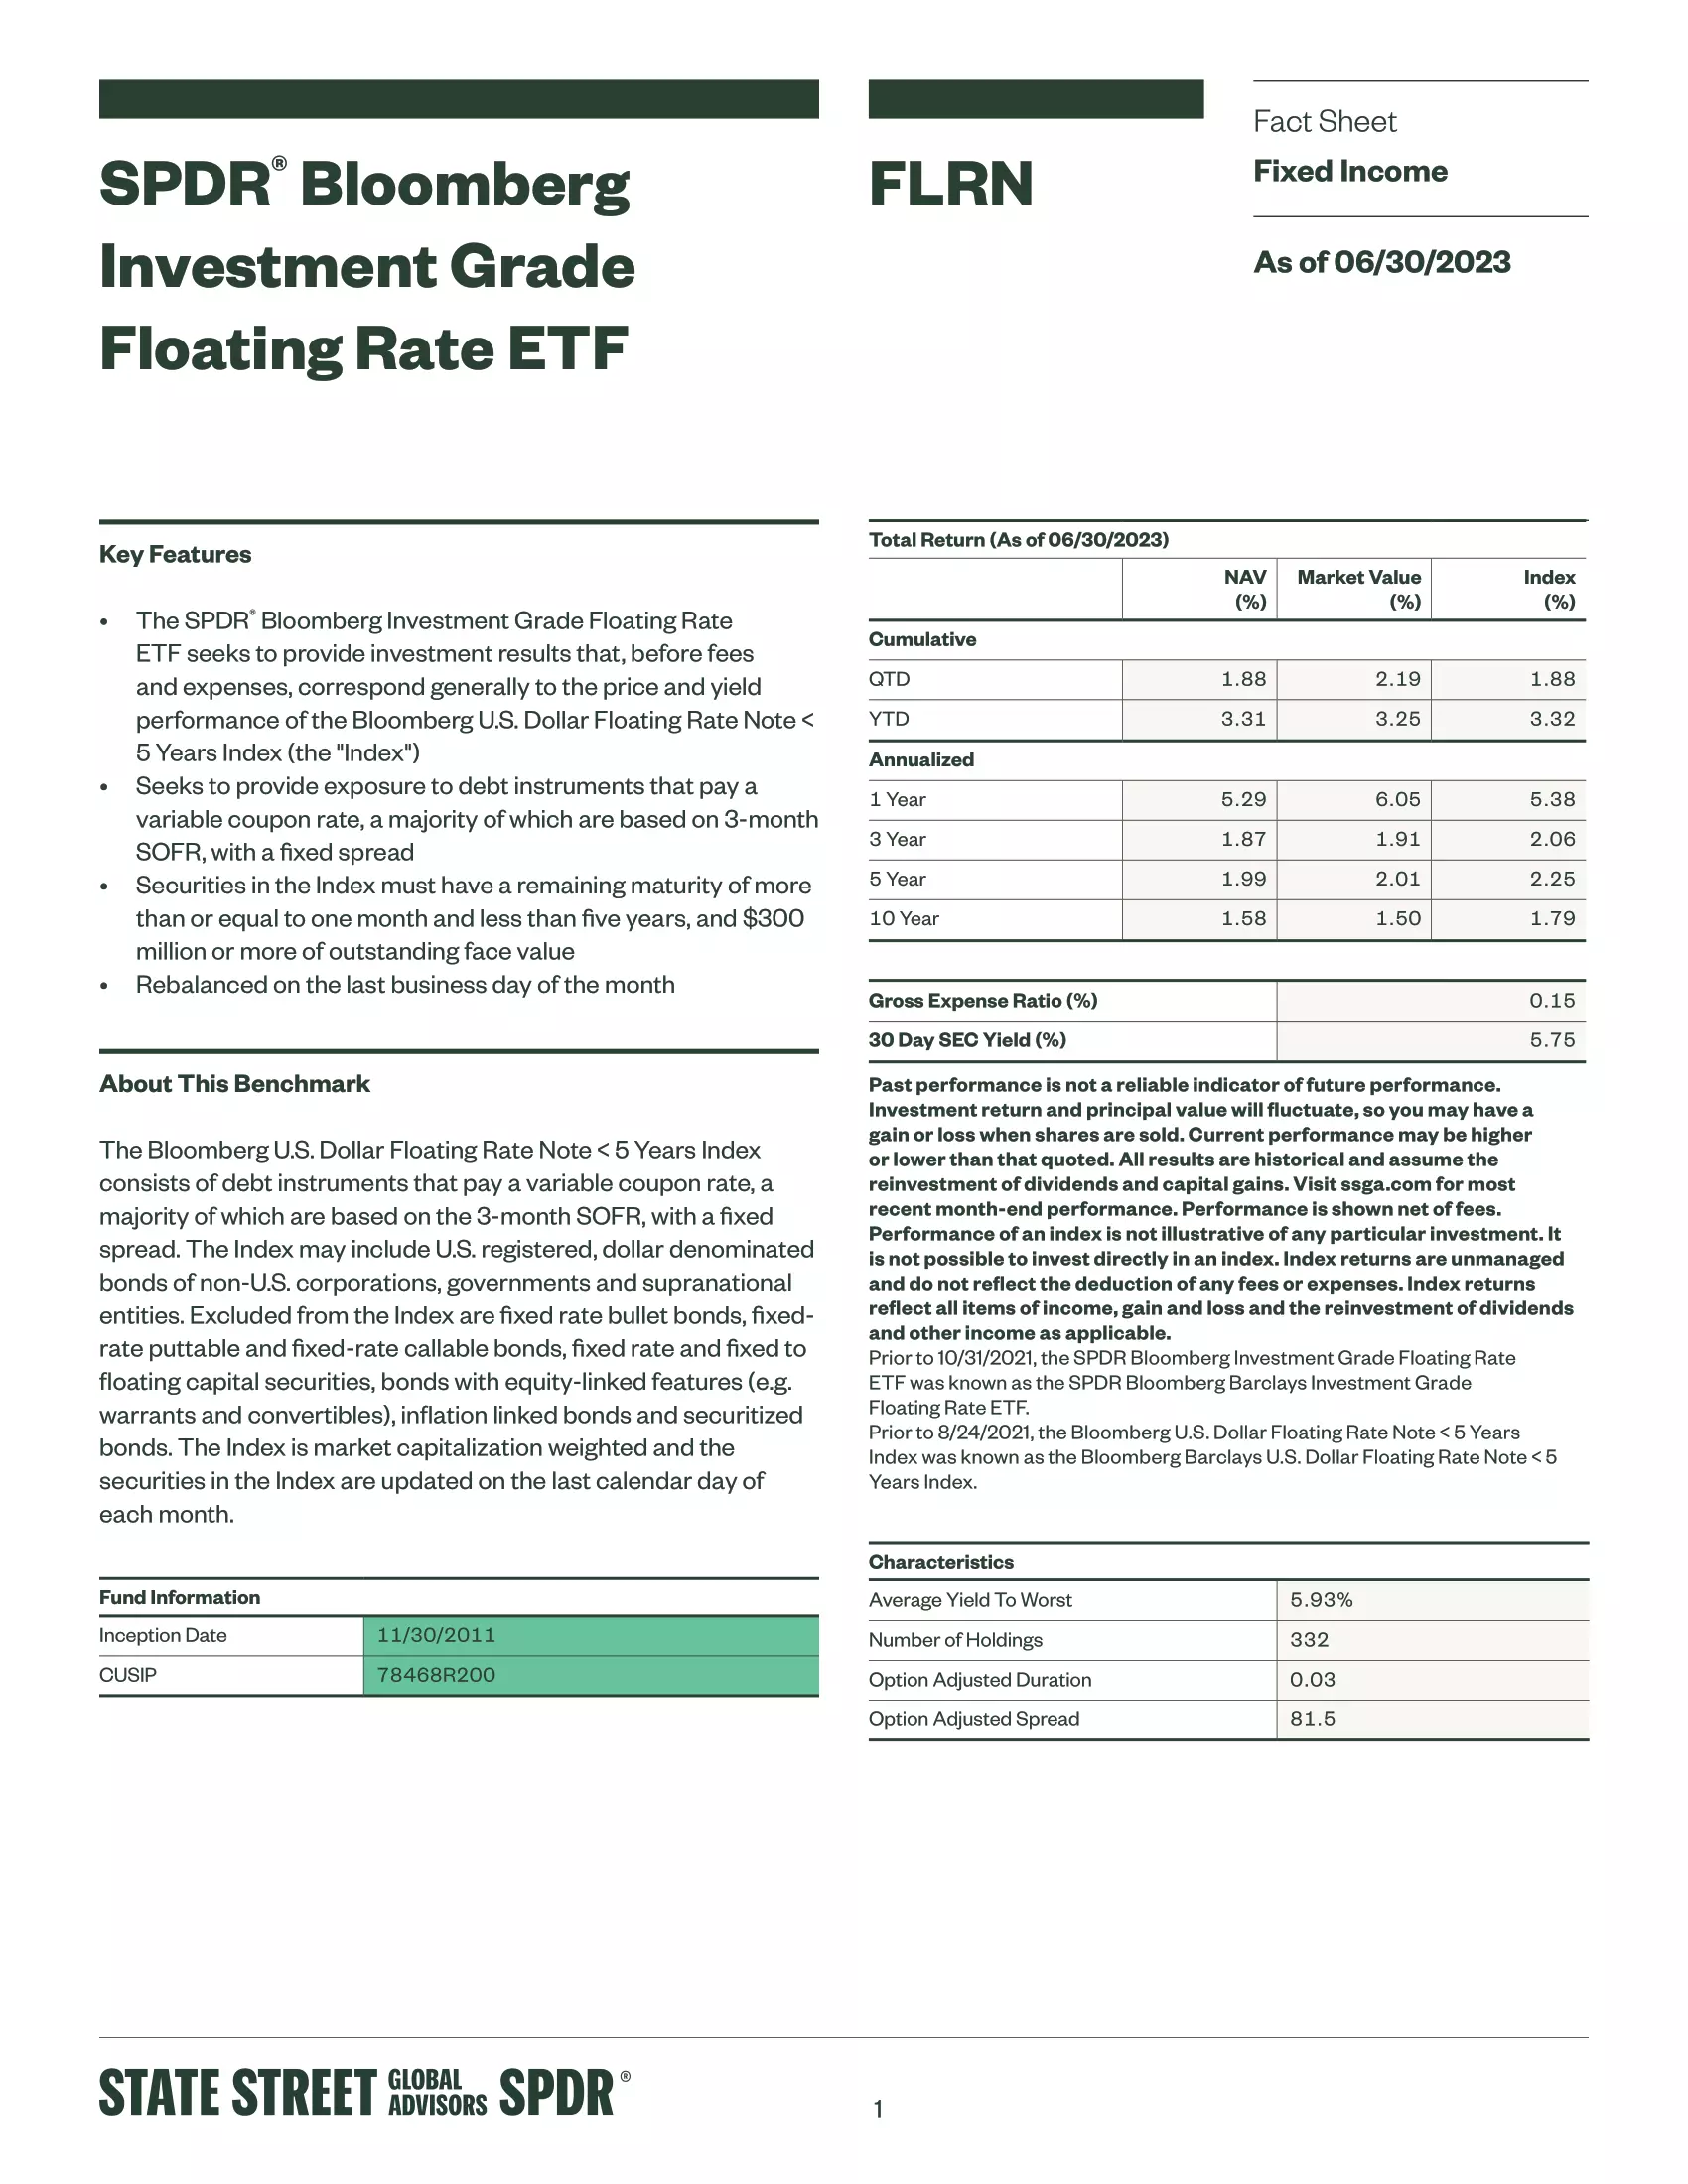 FLRN: SPDR Bloomberg Investment Grade Floating Rate ETF